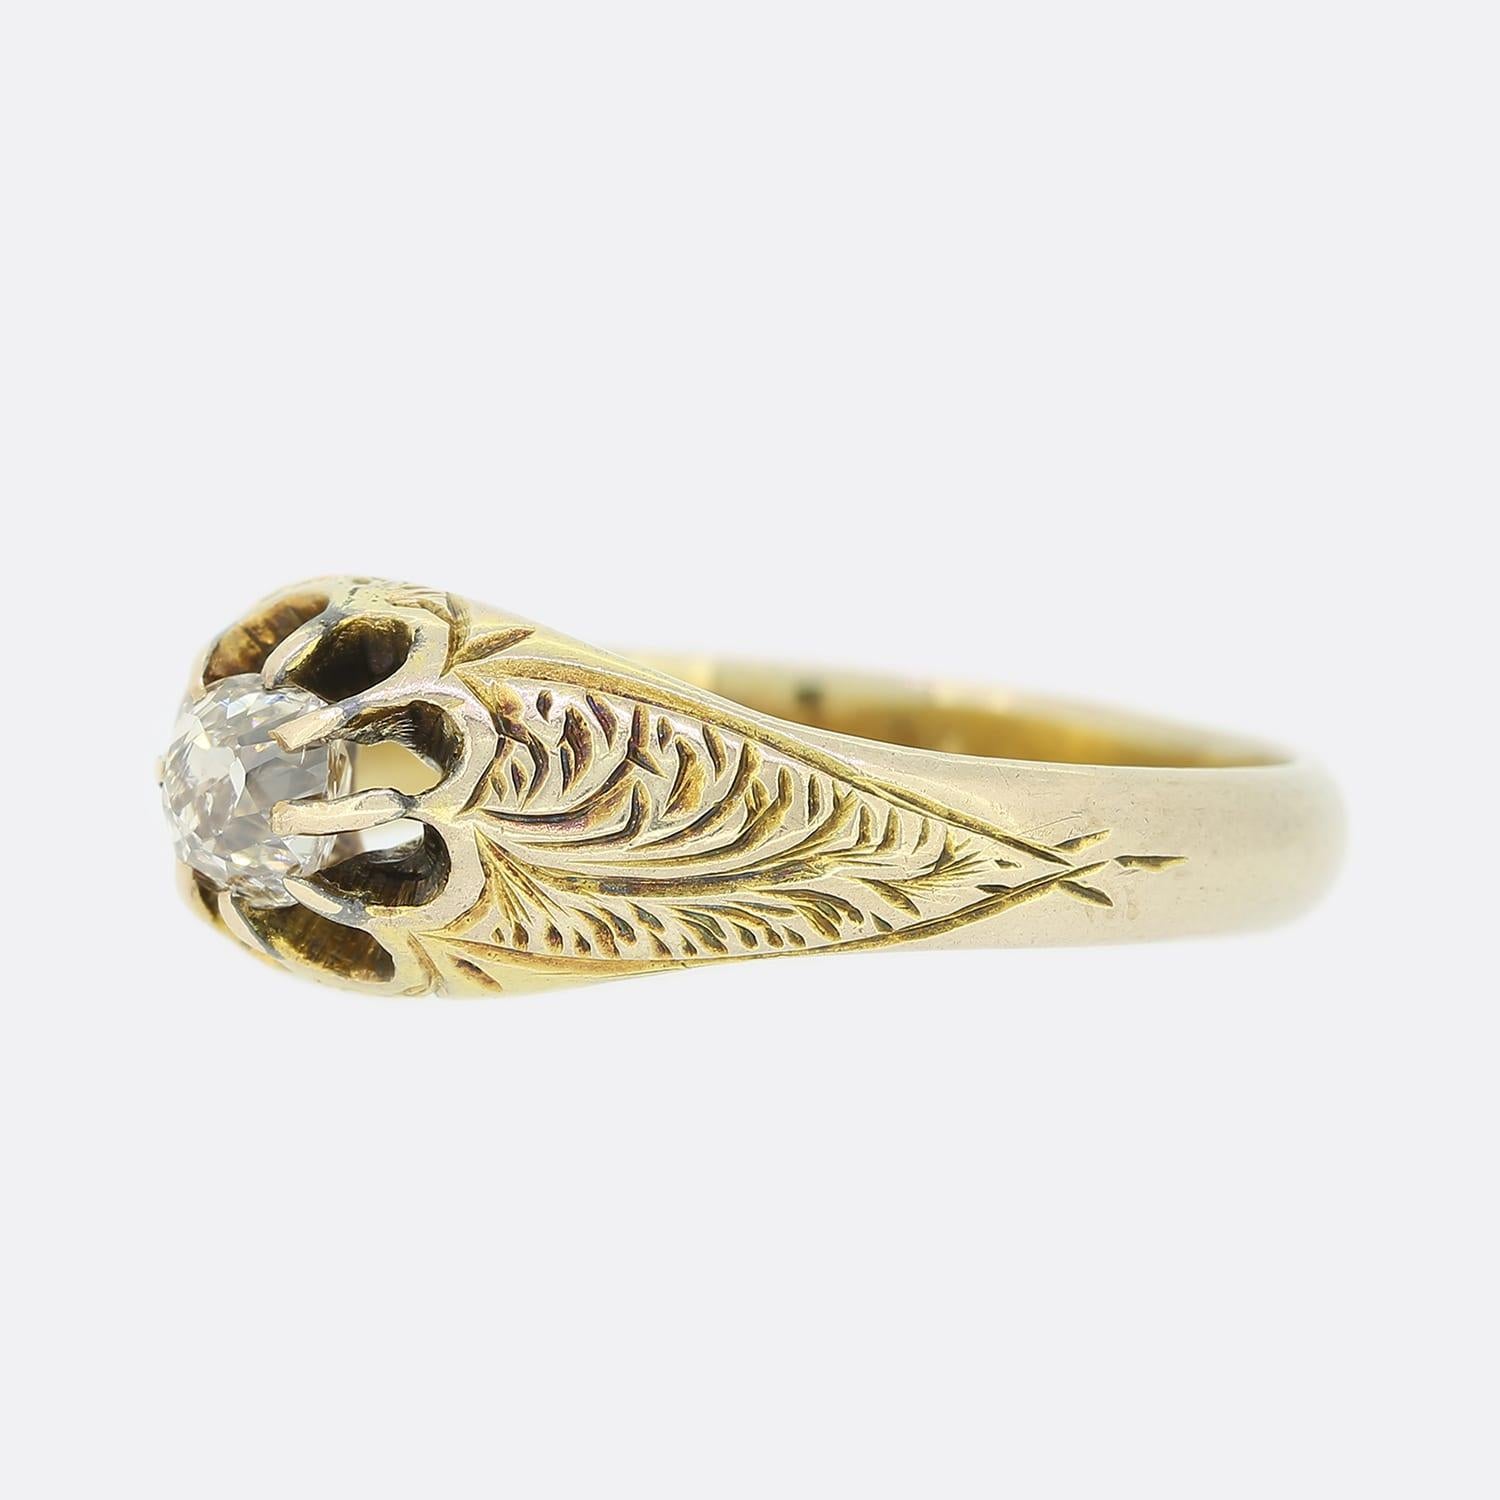 Dies ist eine viktorianische 15ct Gelbgold Diamant Zigeuner Ring. Die Schultern des Rings weisen ein hübsches handgearbeitetes Muster auf, das zu dem in Krallen gefassten Diamanten im Minenschliff führt. Wir lieben die leichte Anlaufen auf den Ring,